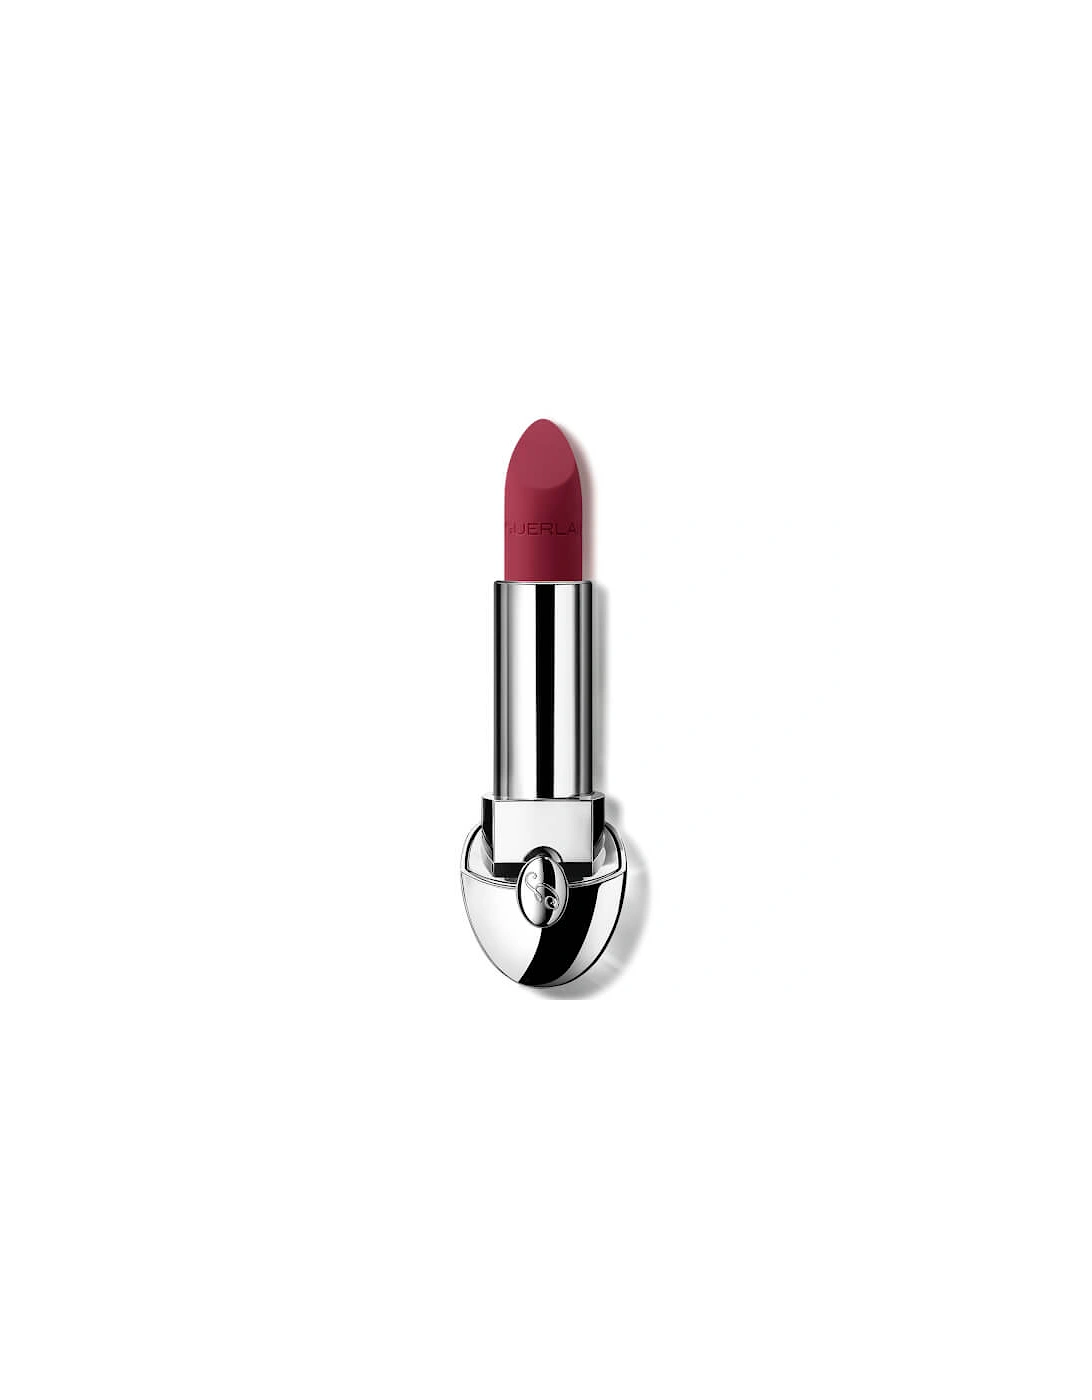 Rouge G Luxurious Velvet 16 Hour Wear High-Pigmentation Velvet Matte Lipstick - 721 Berry Pink, 2 of 1